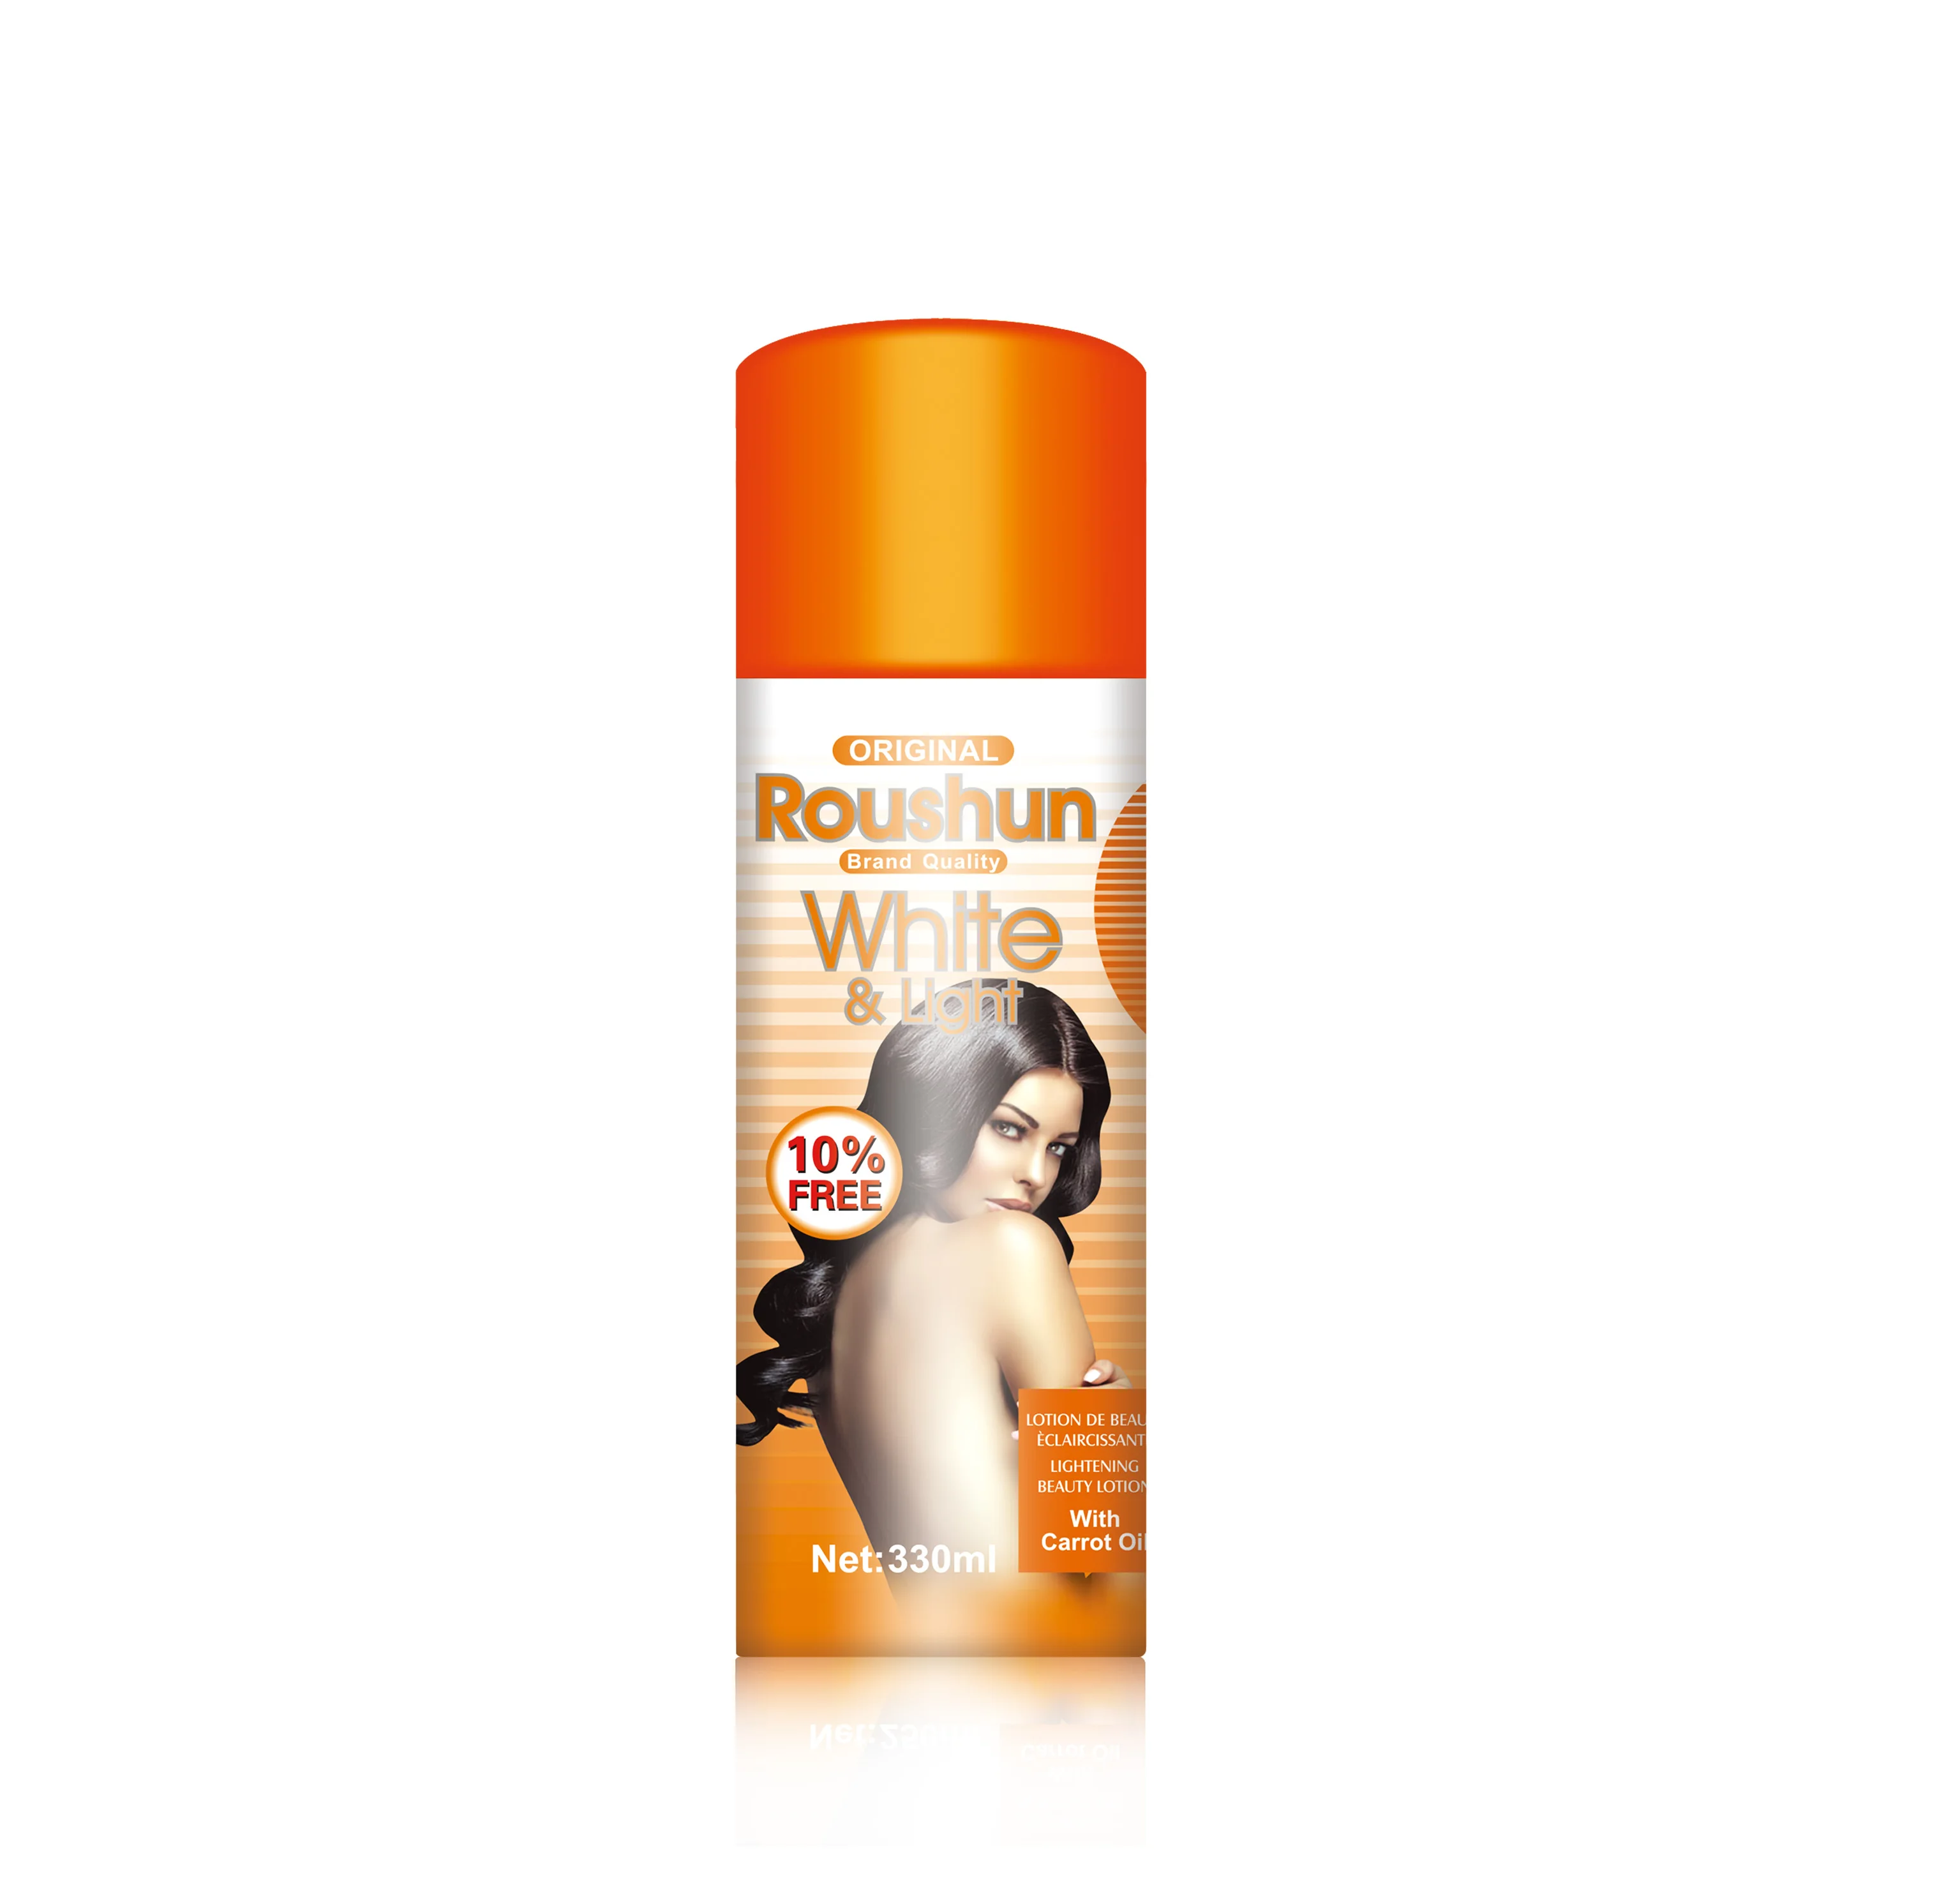 

Roushun Body Lotion Sun Protection white & Light Collagen, Milk white